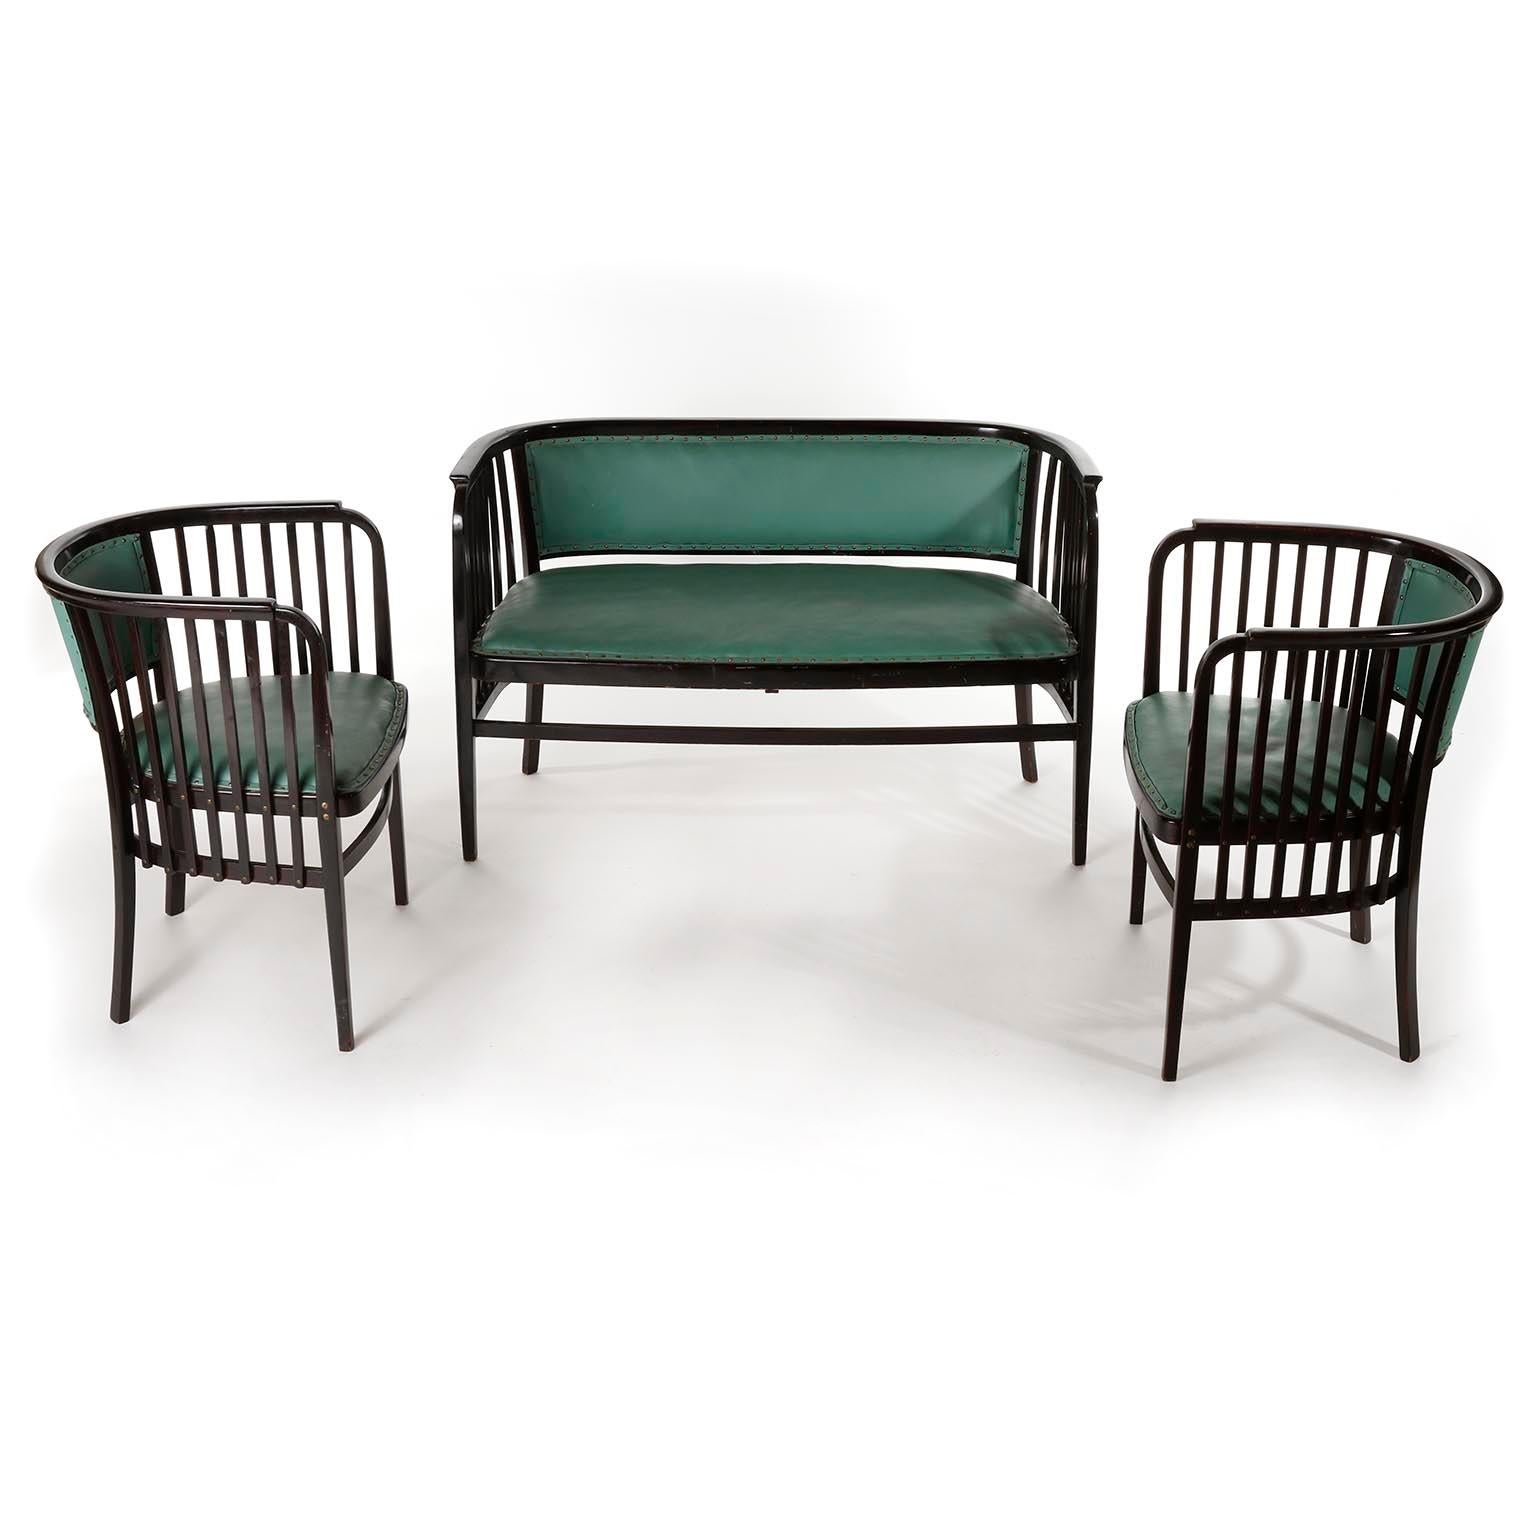 Eine fantastische Sitzgruppe aus Bugholz, entworfen von Marcel Kammerer und hergestellt von Thonet, Österreich, um 1910.
Das Set besteht aus zwei Sesseln und einer Bank oder Sitzbank. Sie sind aus dunklem oder fast schwarz gebeiztem Buchenholz im